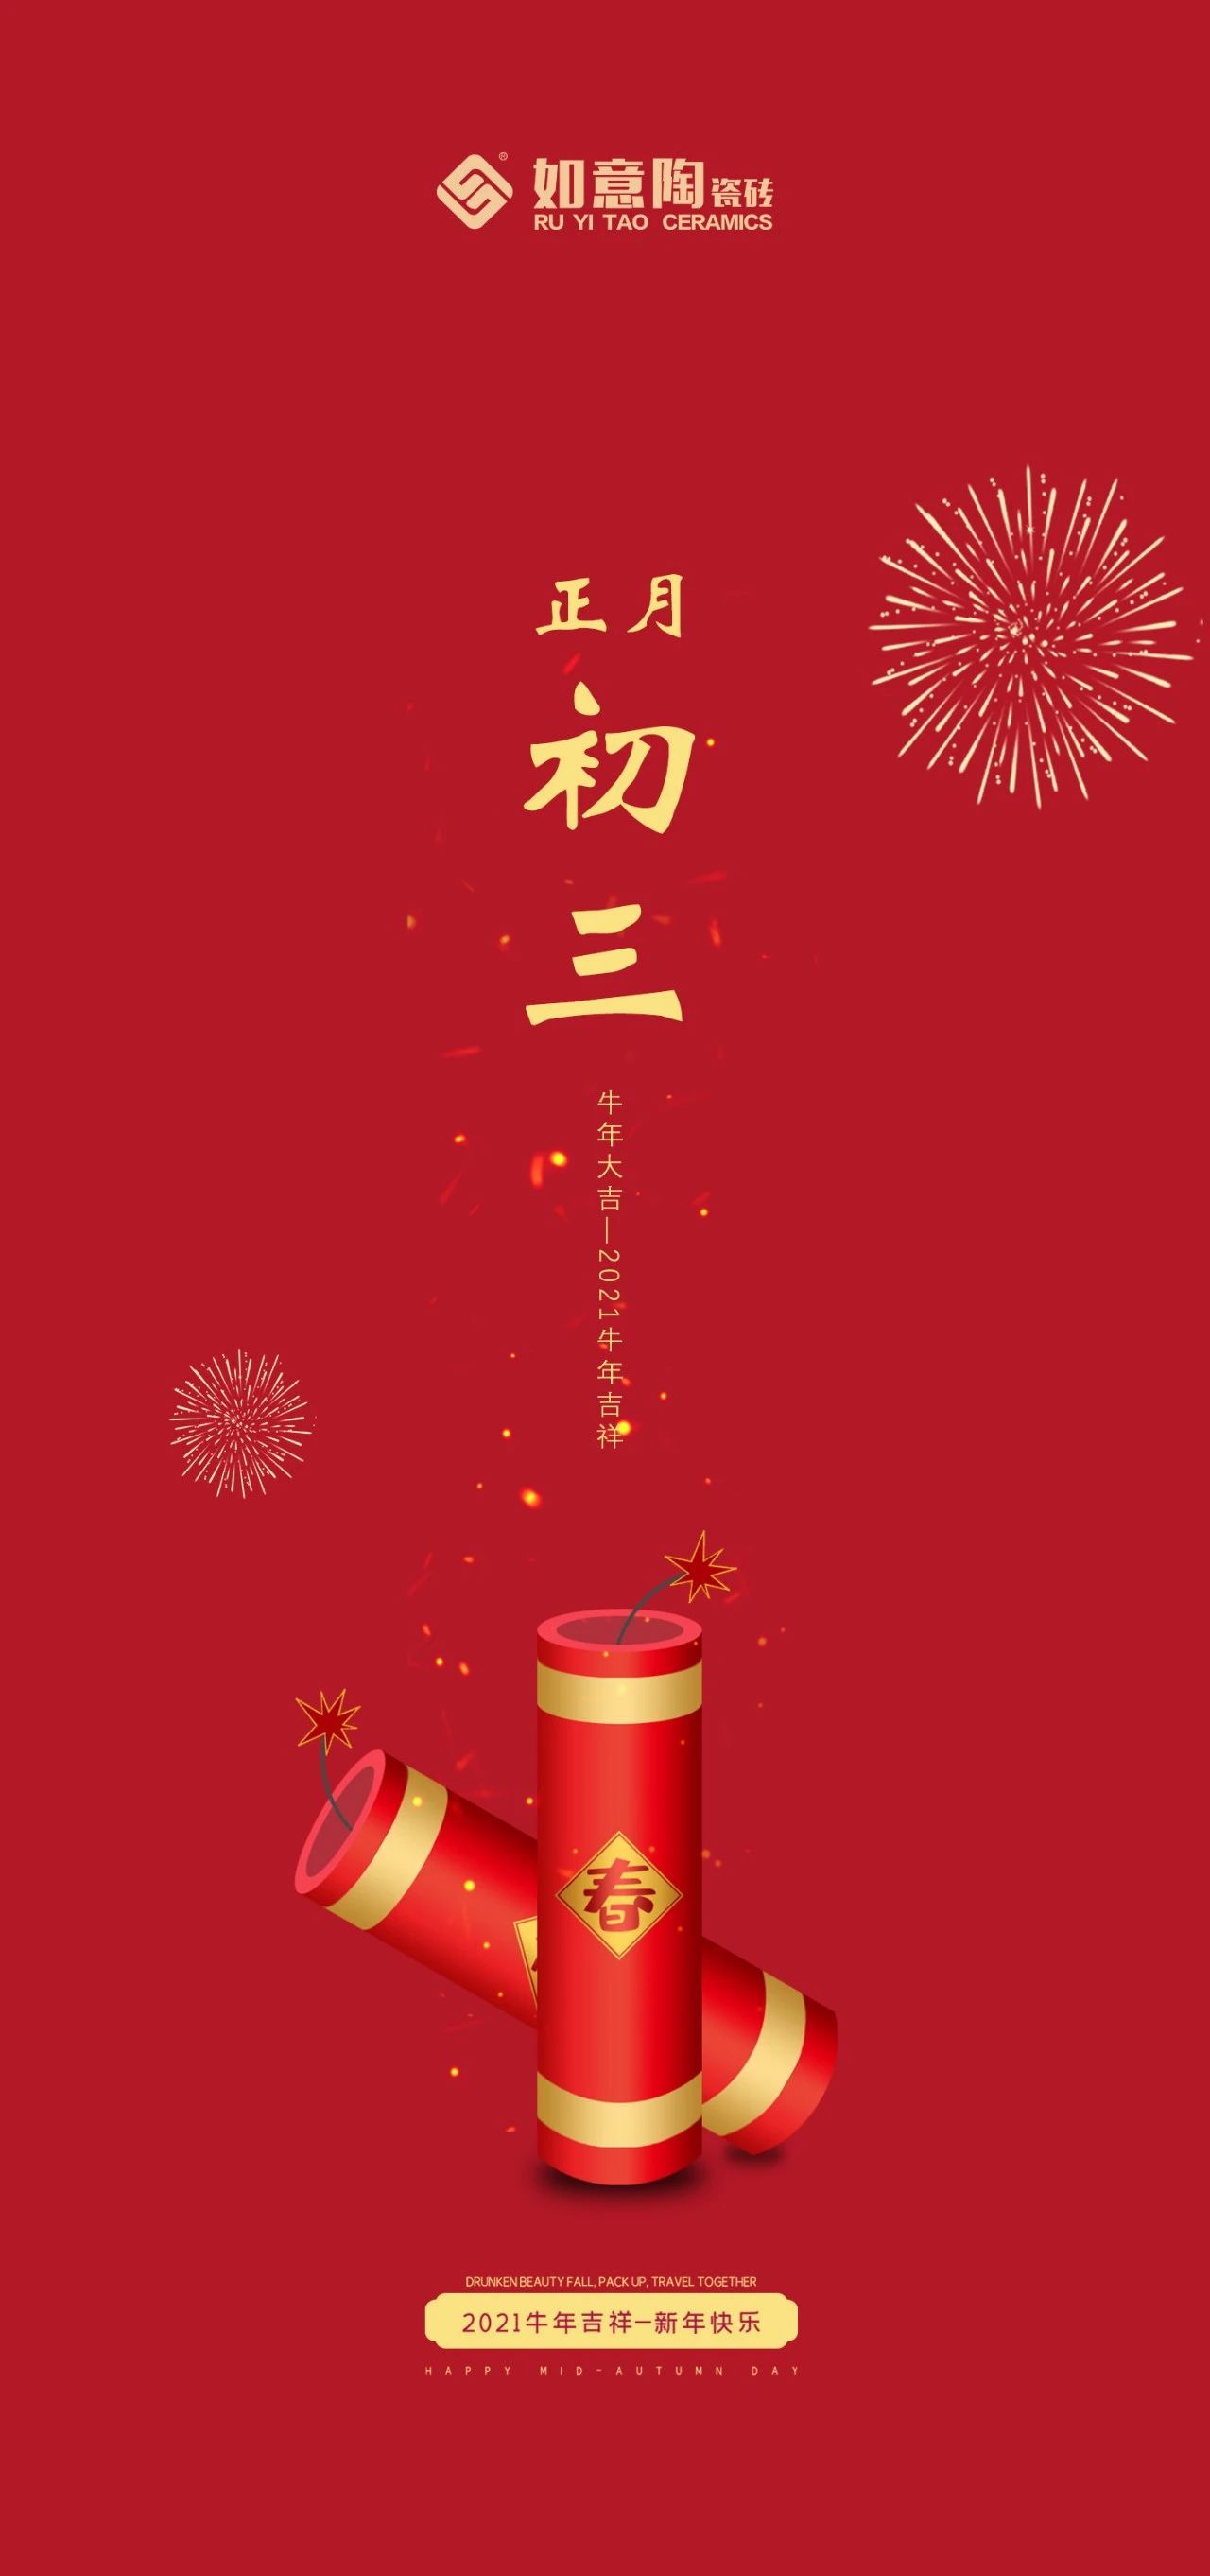 国风中福字正月初三贴赤口大年初三春节2019猪年新年过年海报图片下载 - 觅知网